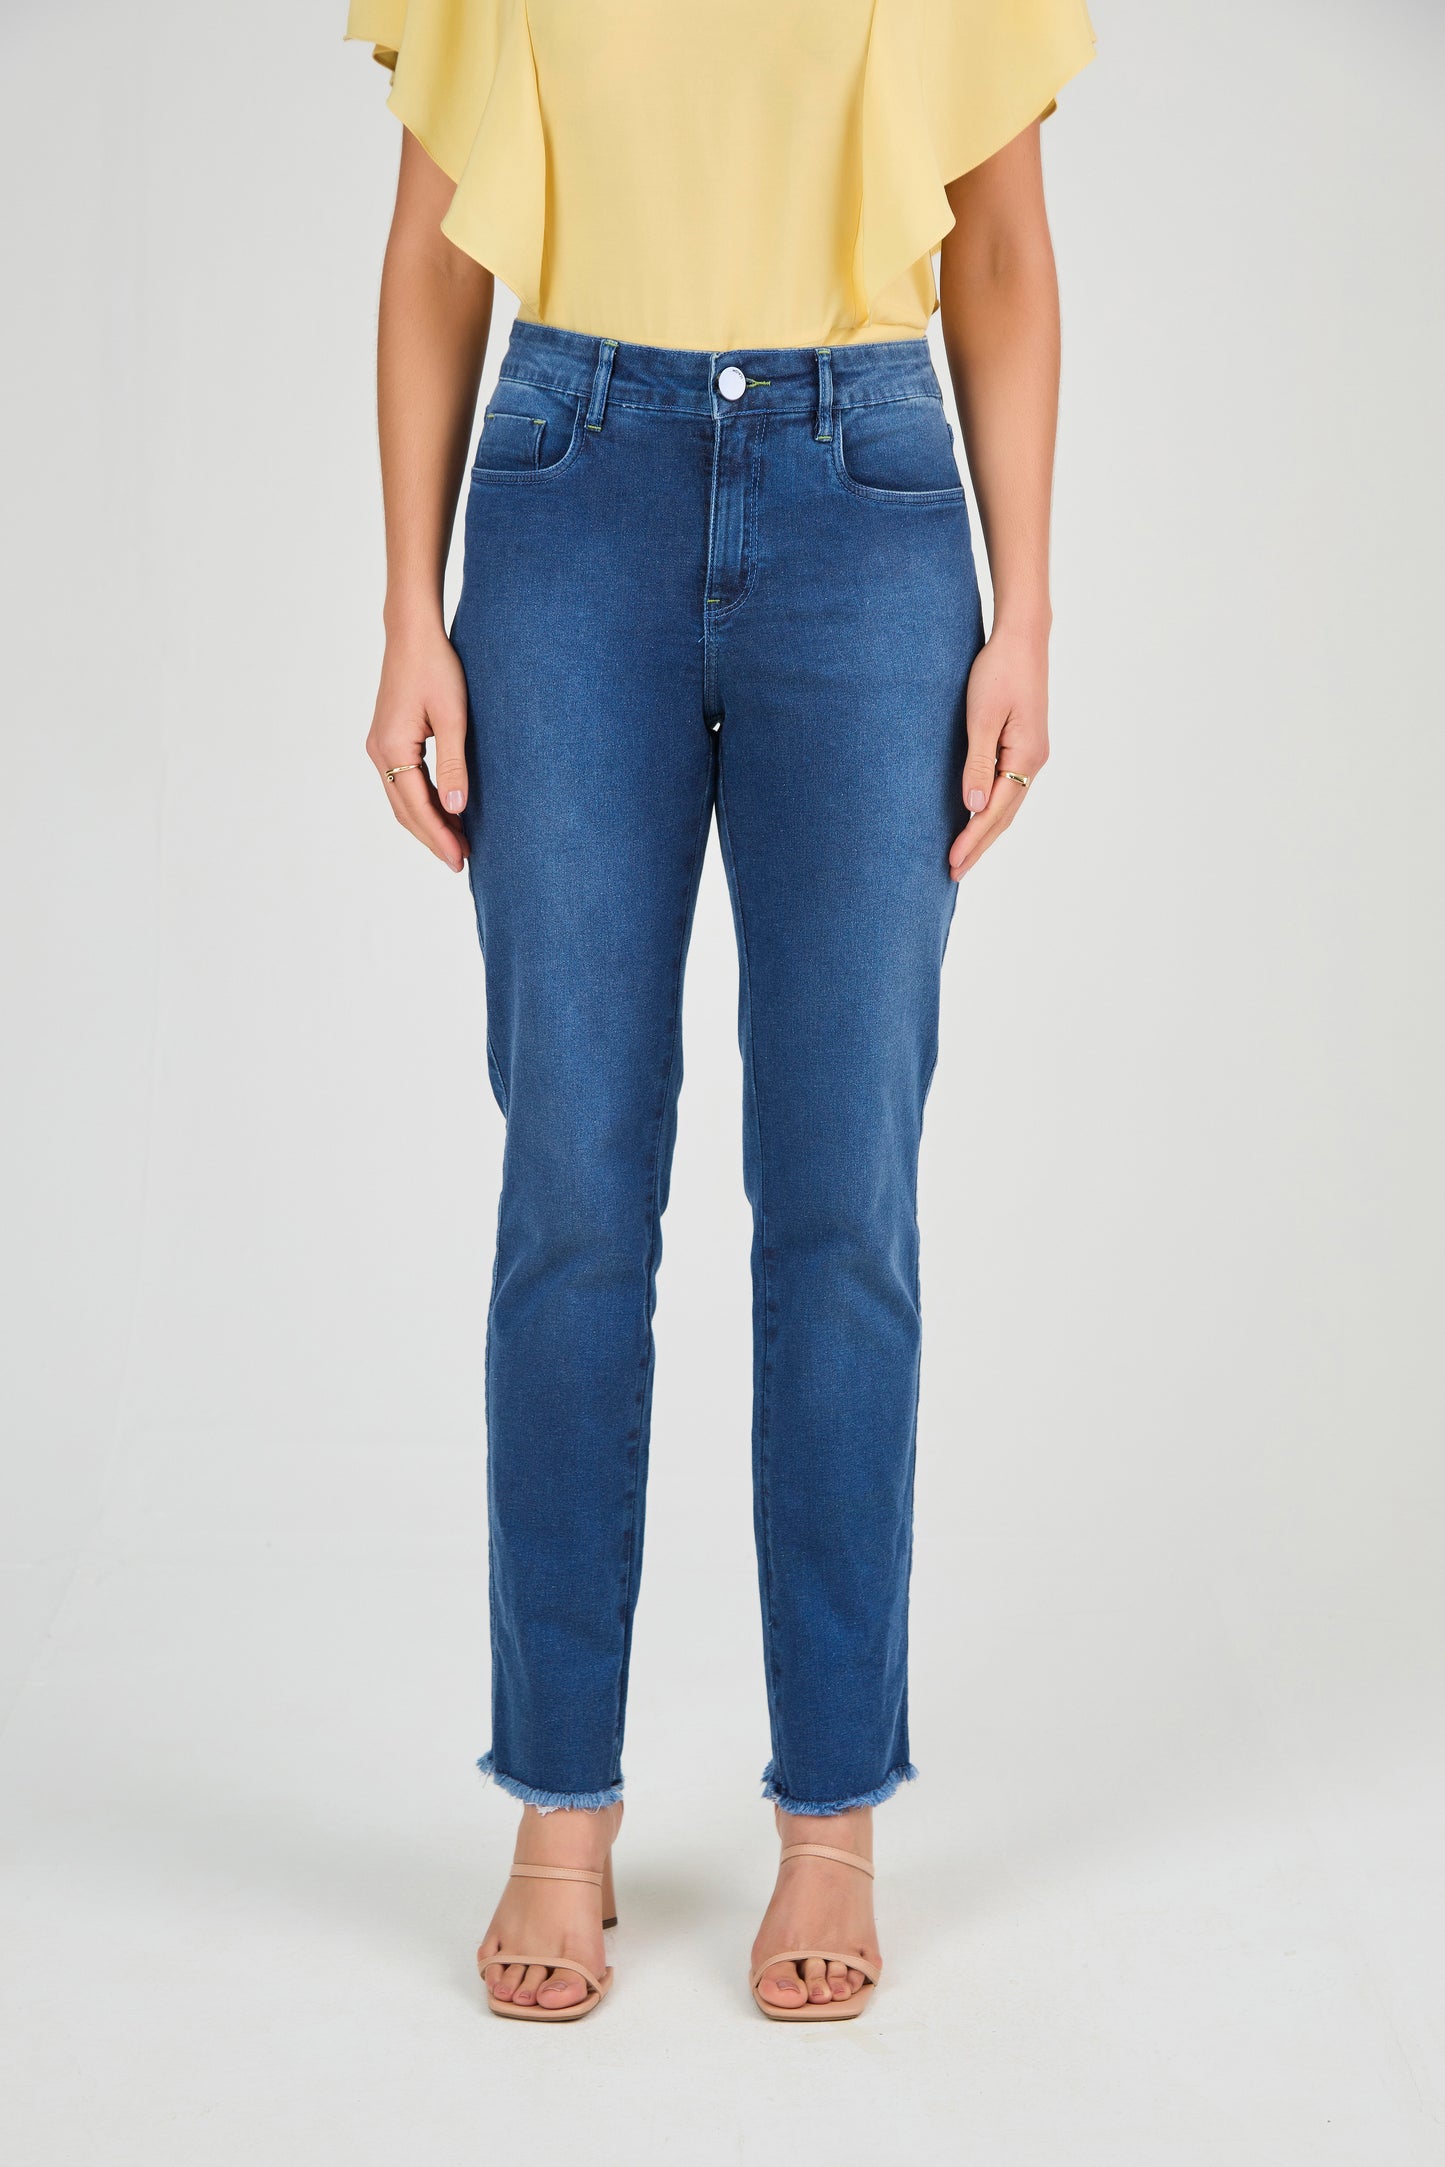 calça jeans reta cintura intermediria com bordado pesponto